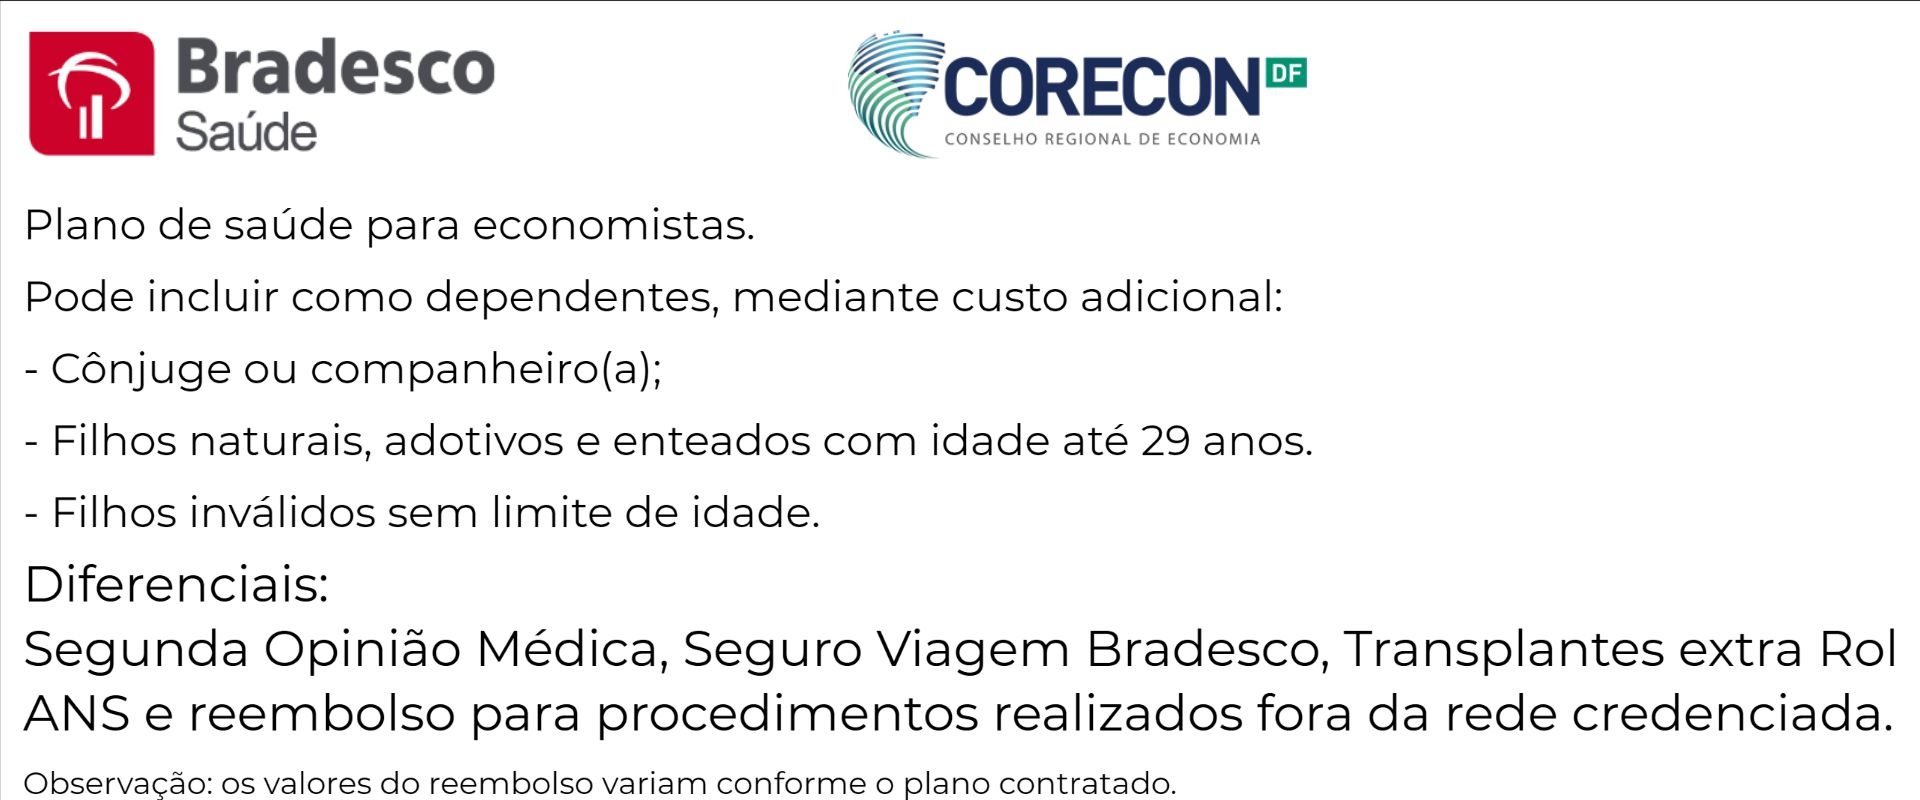 Bradesco Saúde Corecon-DF